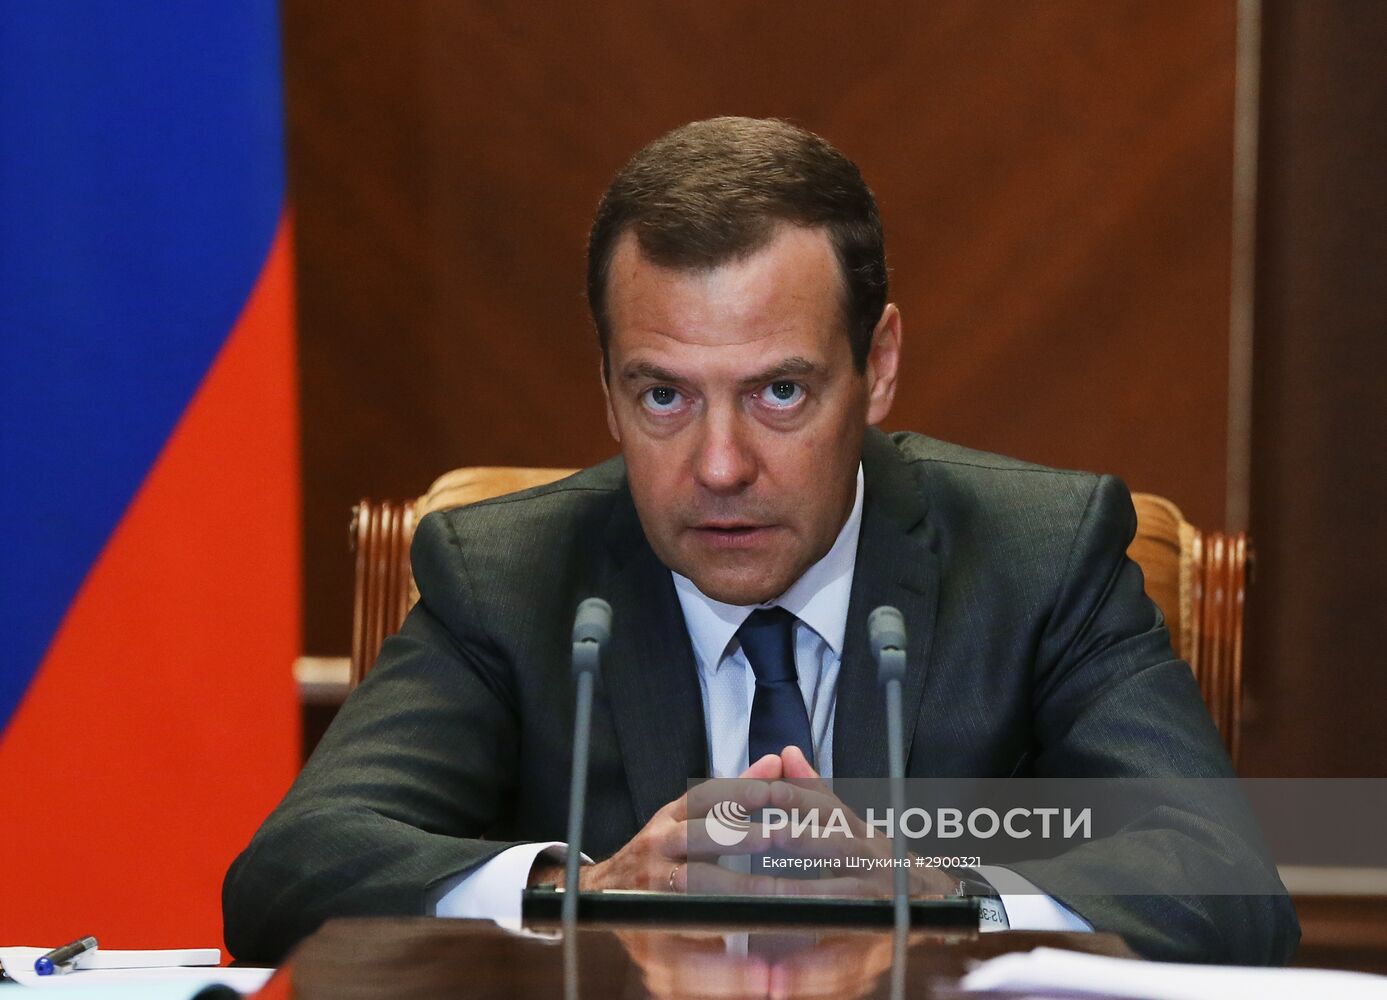 Премьер-министр РФ Д. Медведев провел совещания о расходах федерального бюджета